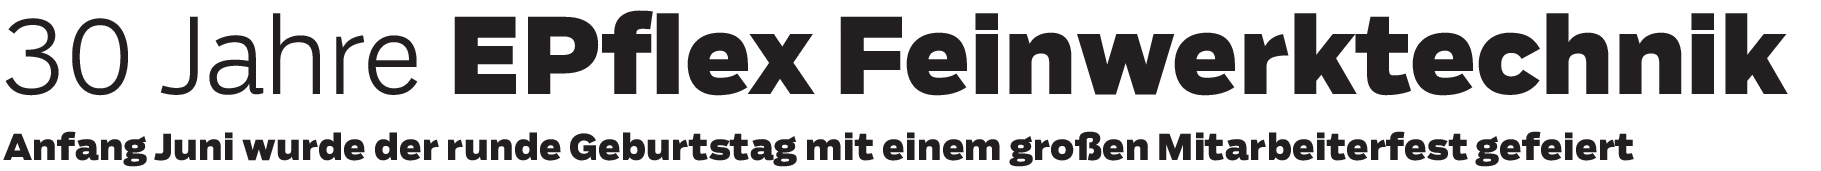 30 Jahre EPflex Feinwerktechnik: Aus der schwäbischen Garage zum Global Player